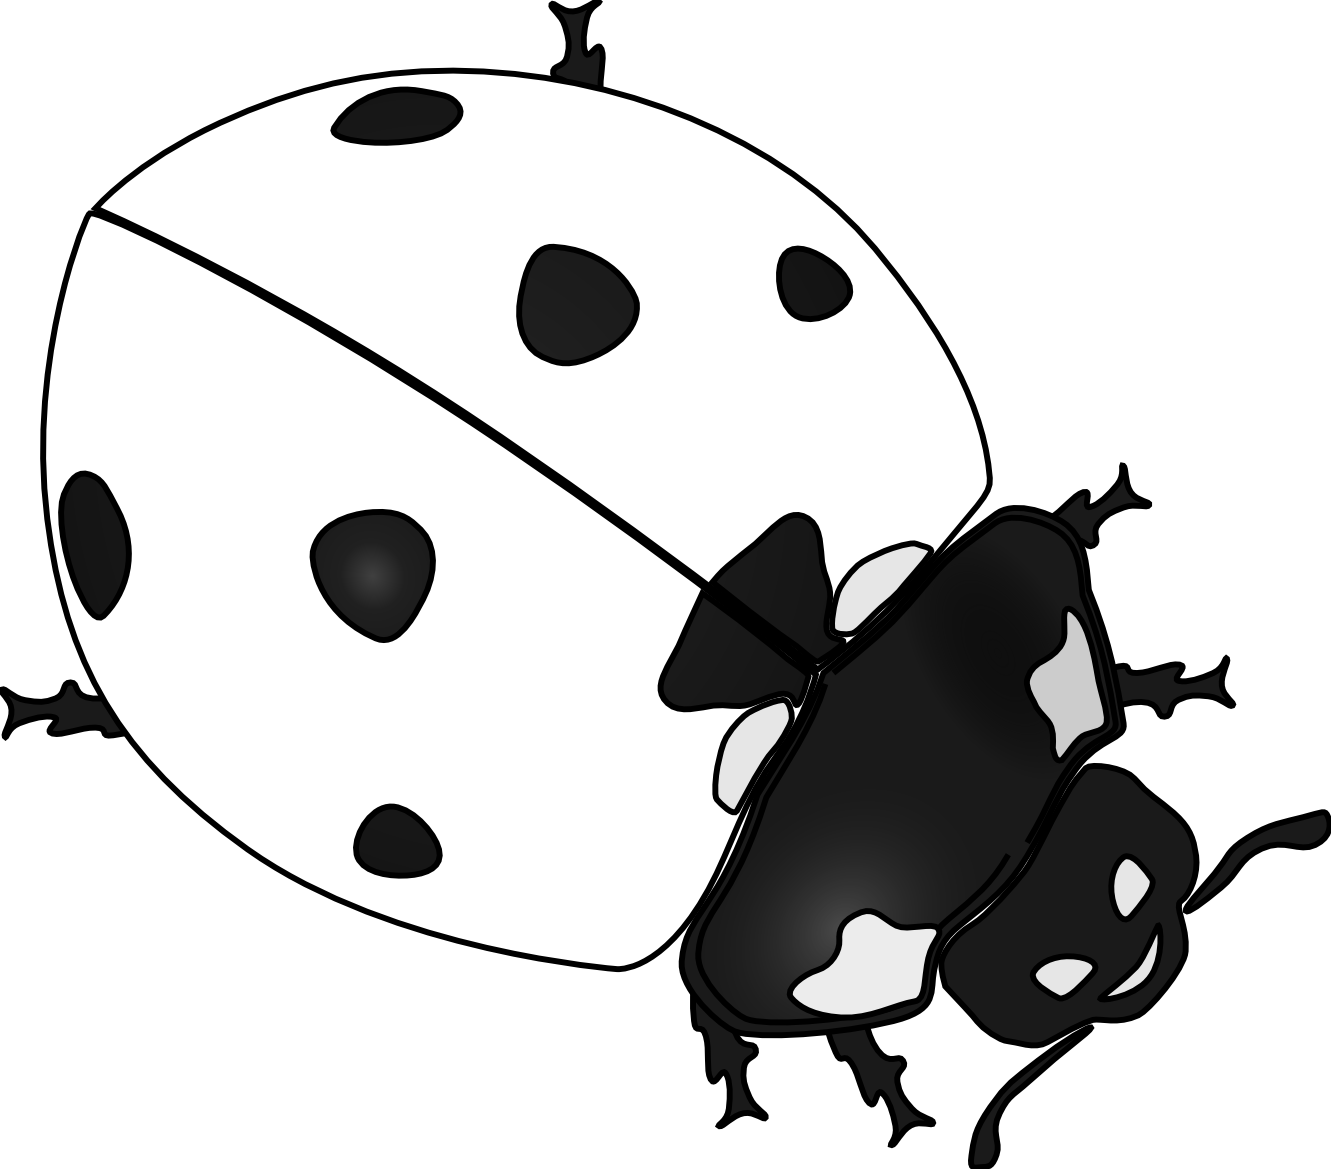 free black and white ladybug clipart - photo #11